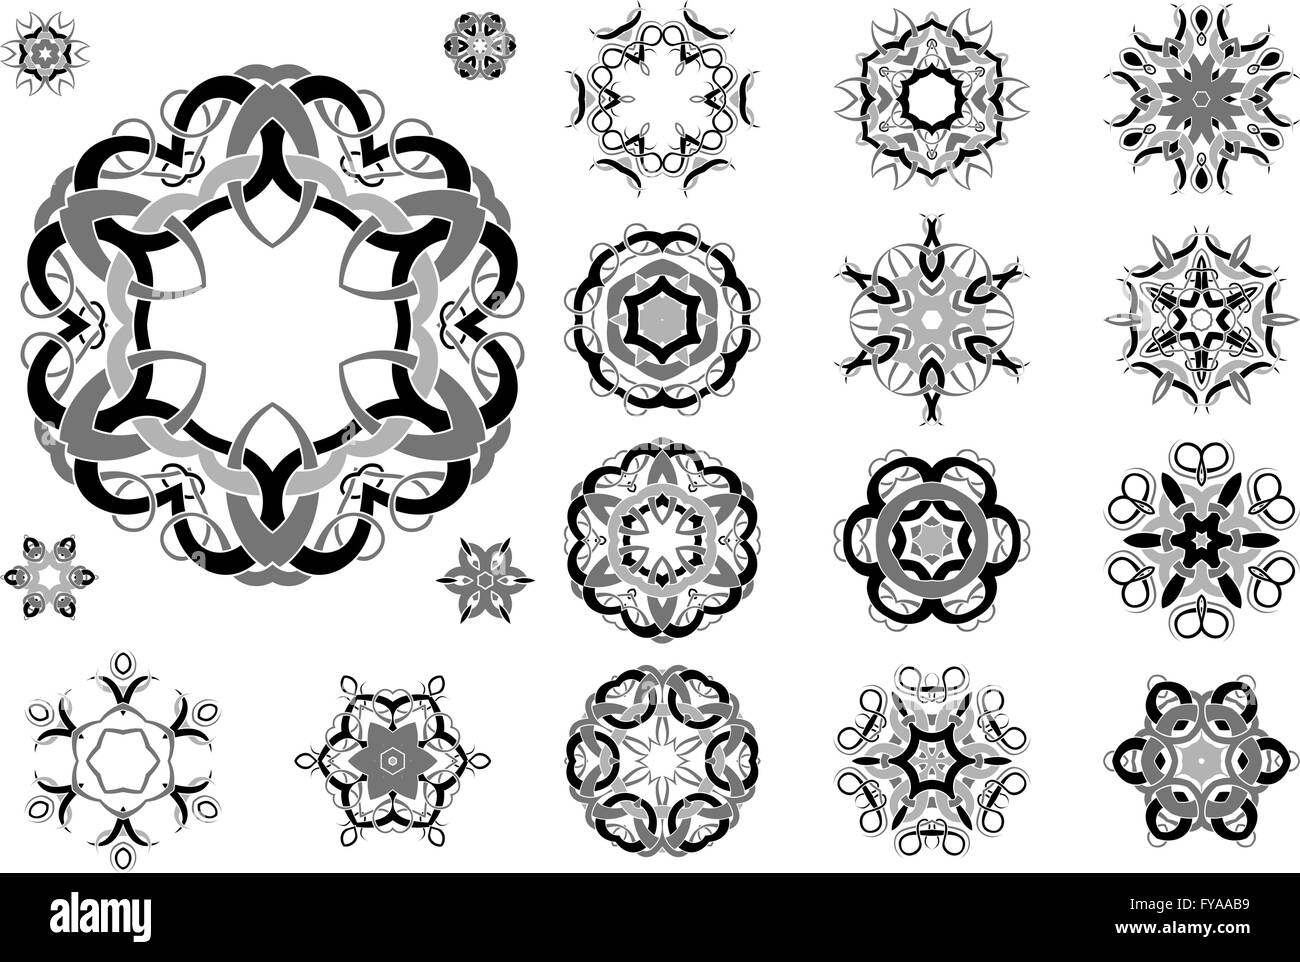 L'art du tatouage celtique, attachées par circulaire les mandalas, modèle floral et ornements rétro baroque design vector set. Illustration de Vecteur